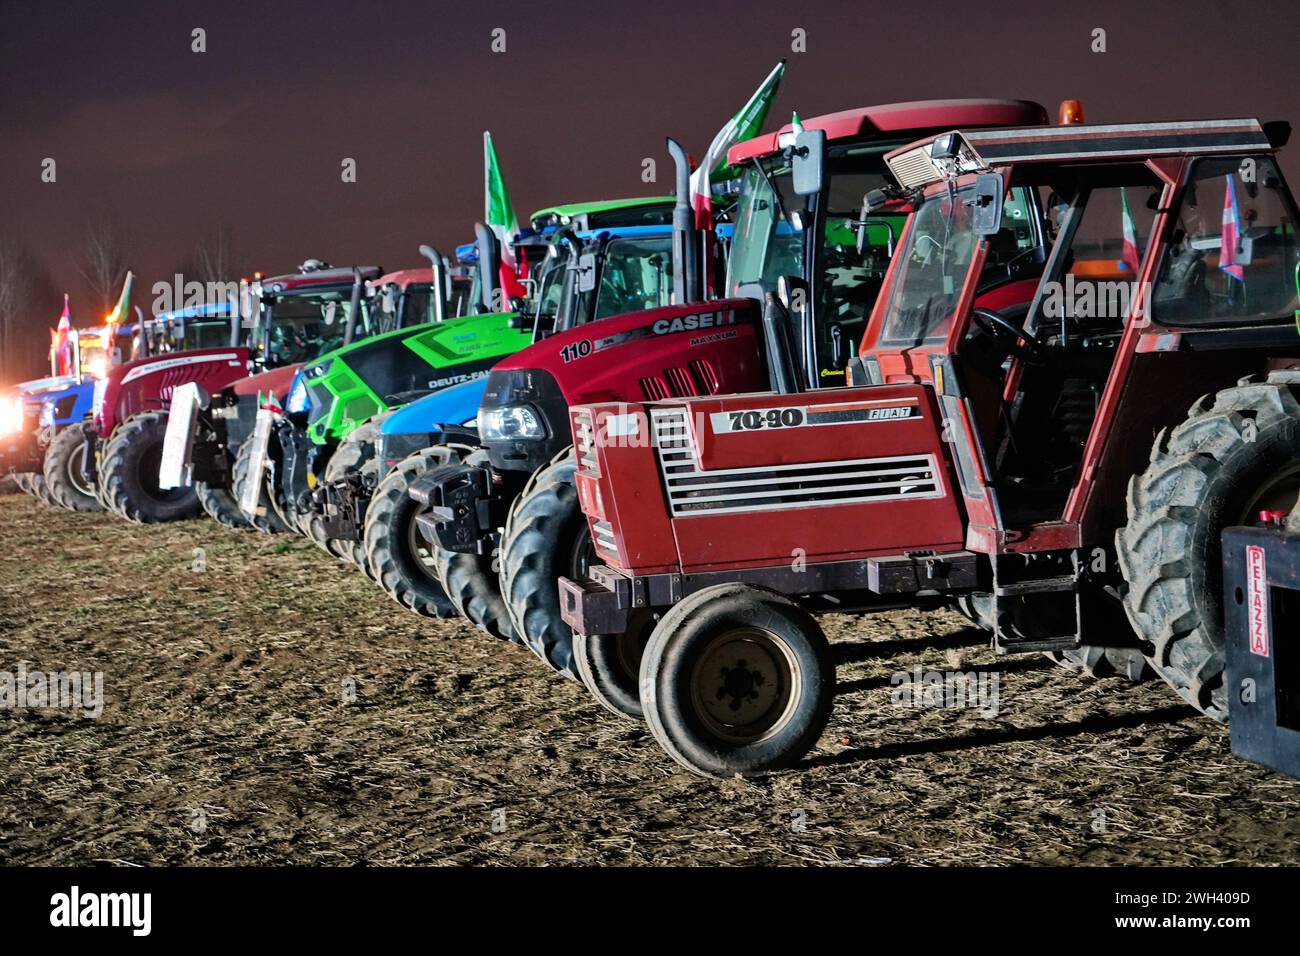 Rivoli, Italie - 7 février 2024 : les agriculteurs protestent avec tracteurs contre les politiques européennes sur les coûts de production. Banque D'Images